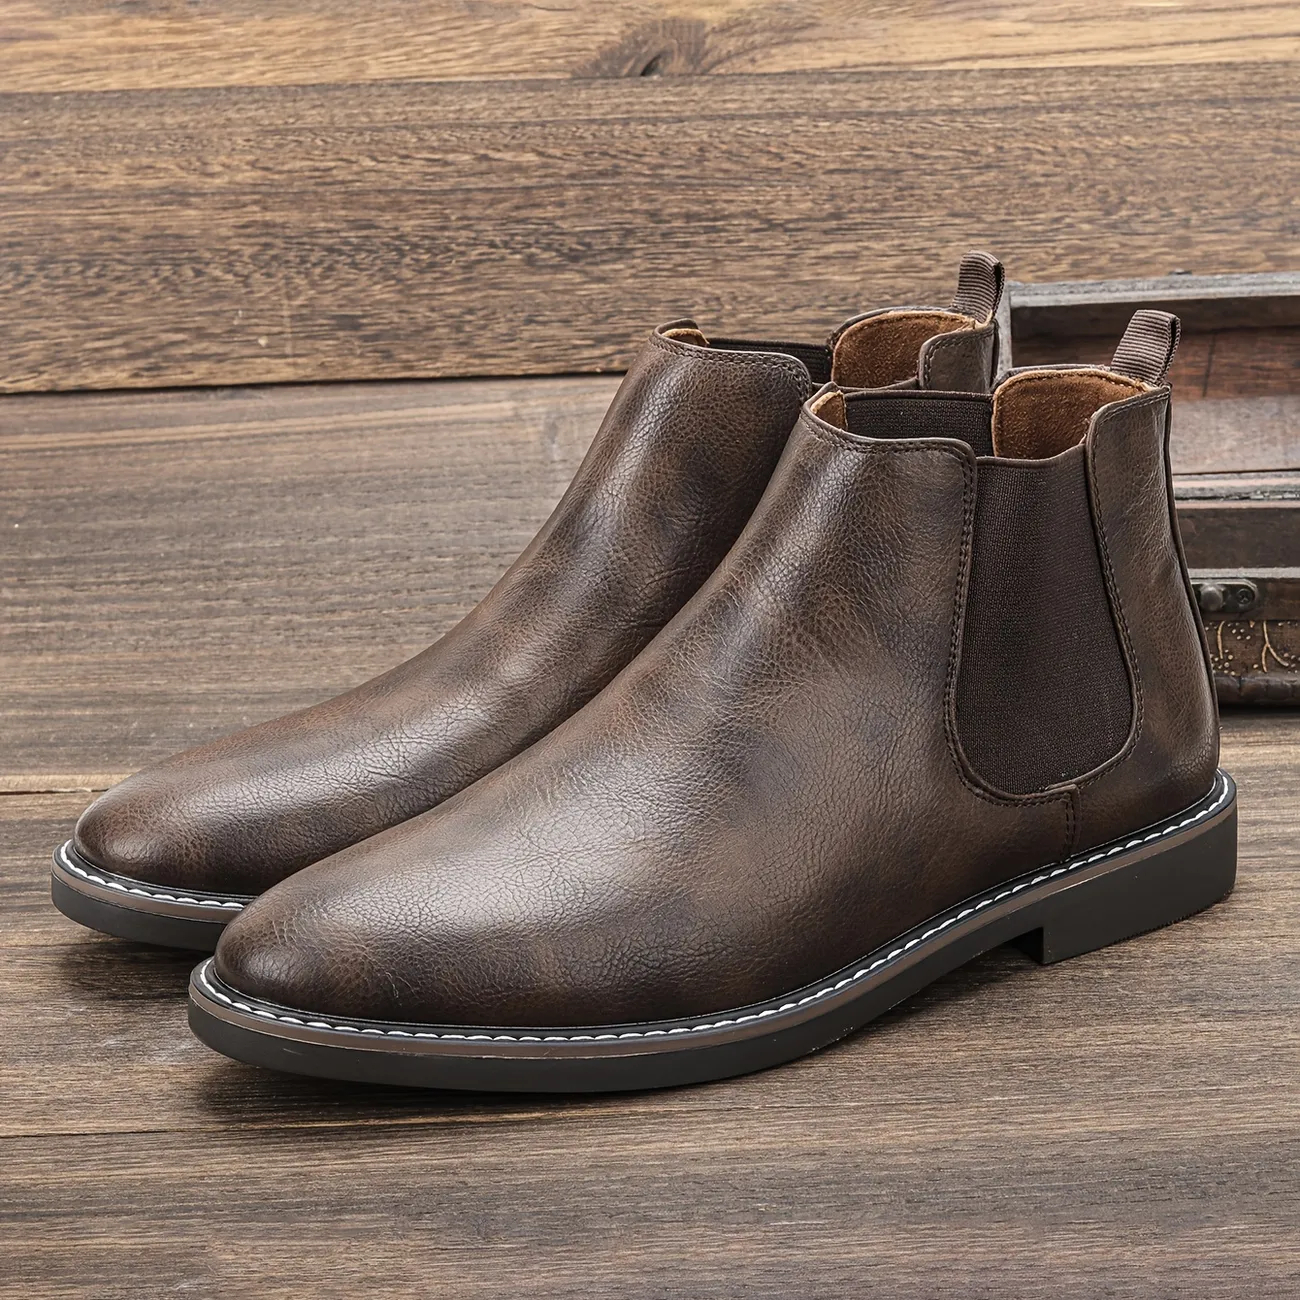 Men's Vintage Retro Chelsea Boots, Shoes For Winter - Temu